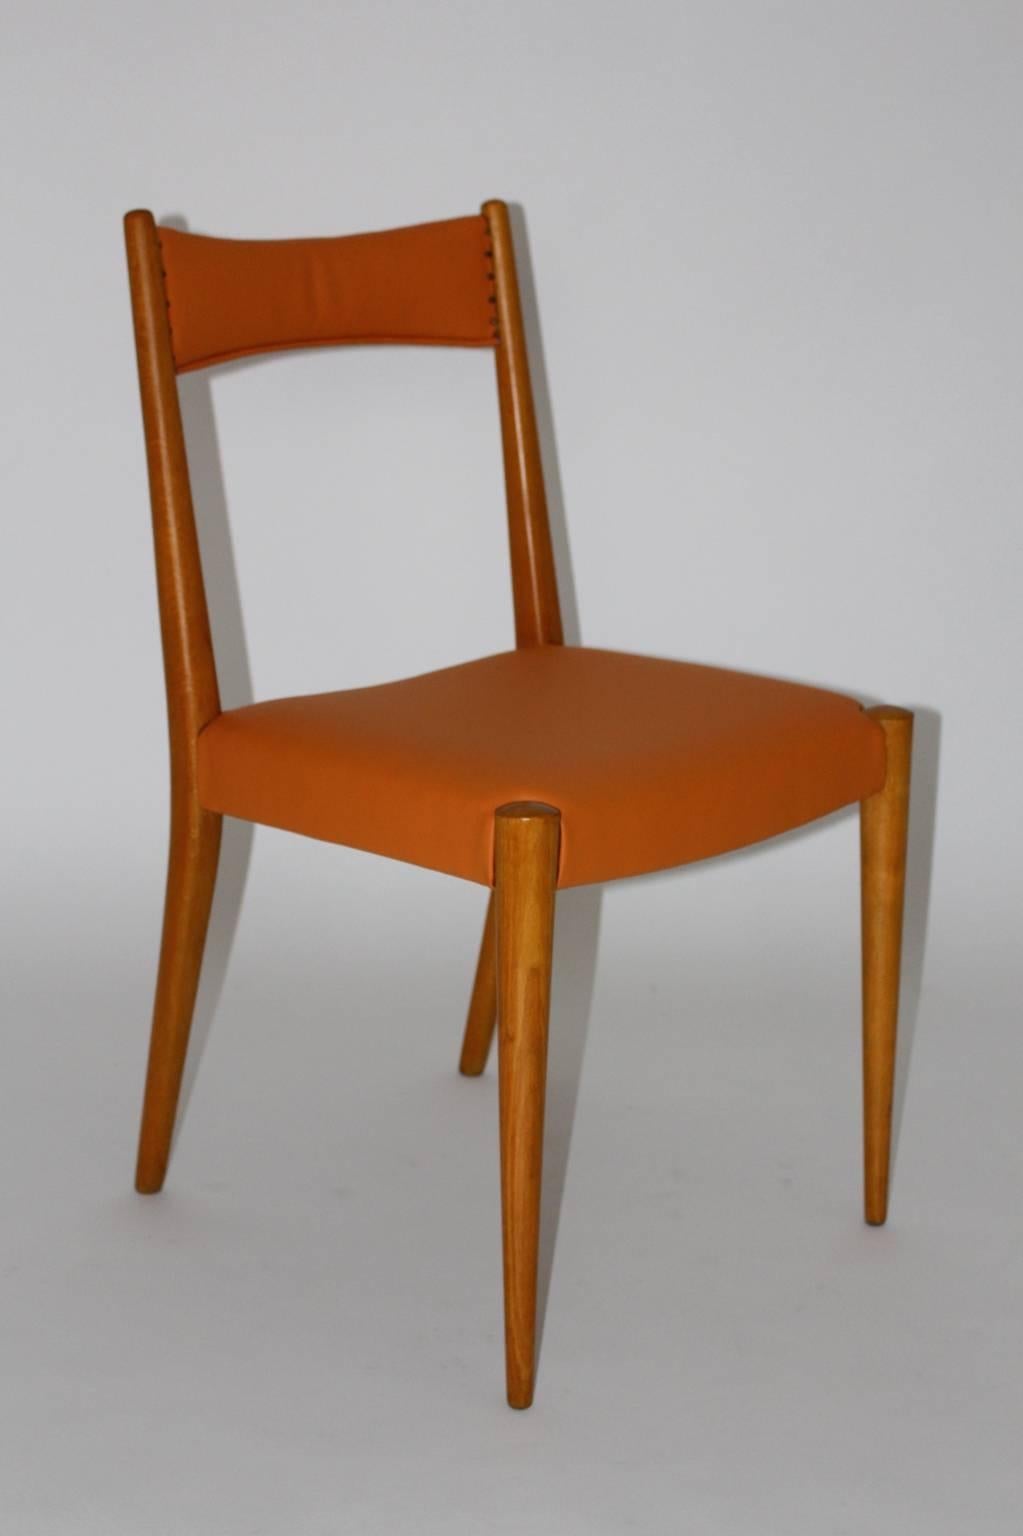 Mid century modern vintage beech orange ten ( 10 ) dining chairs or chairs  entworfen von Anna Lülja Praun, Wien 1953 und ausgeführt von Wiesner - Hager. 
Diese zehn Esszimmerstühle zeichnen sich durch ihr minimalistisches Design aus, das sich